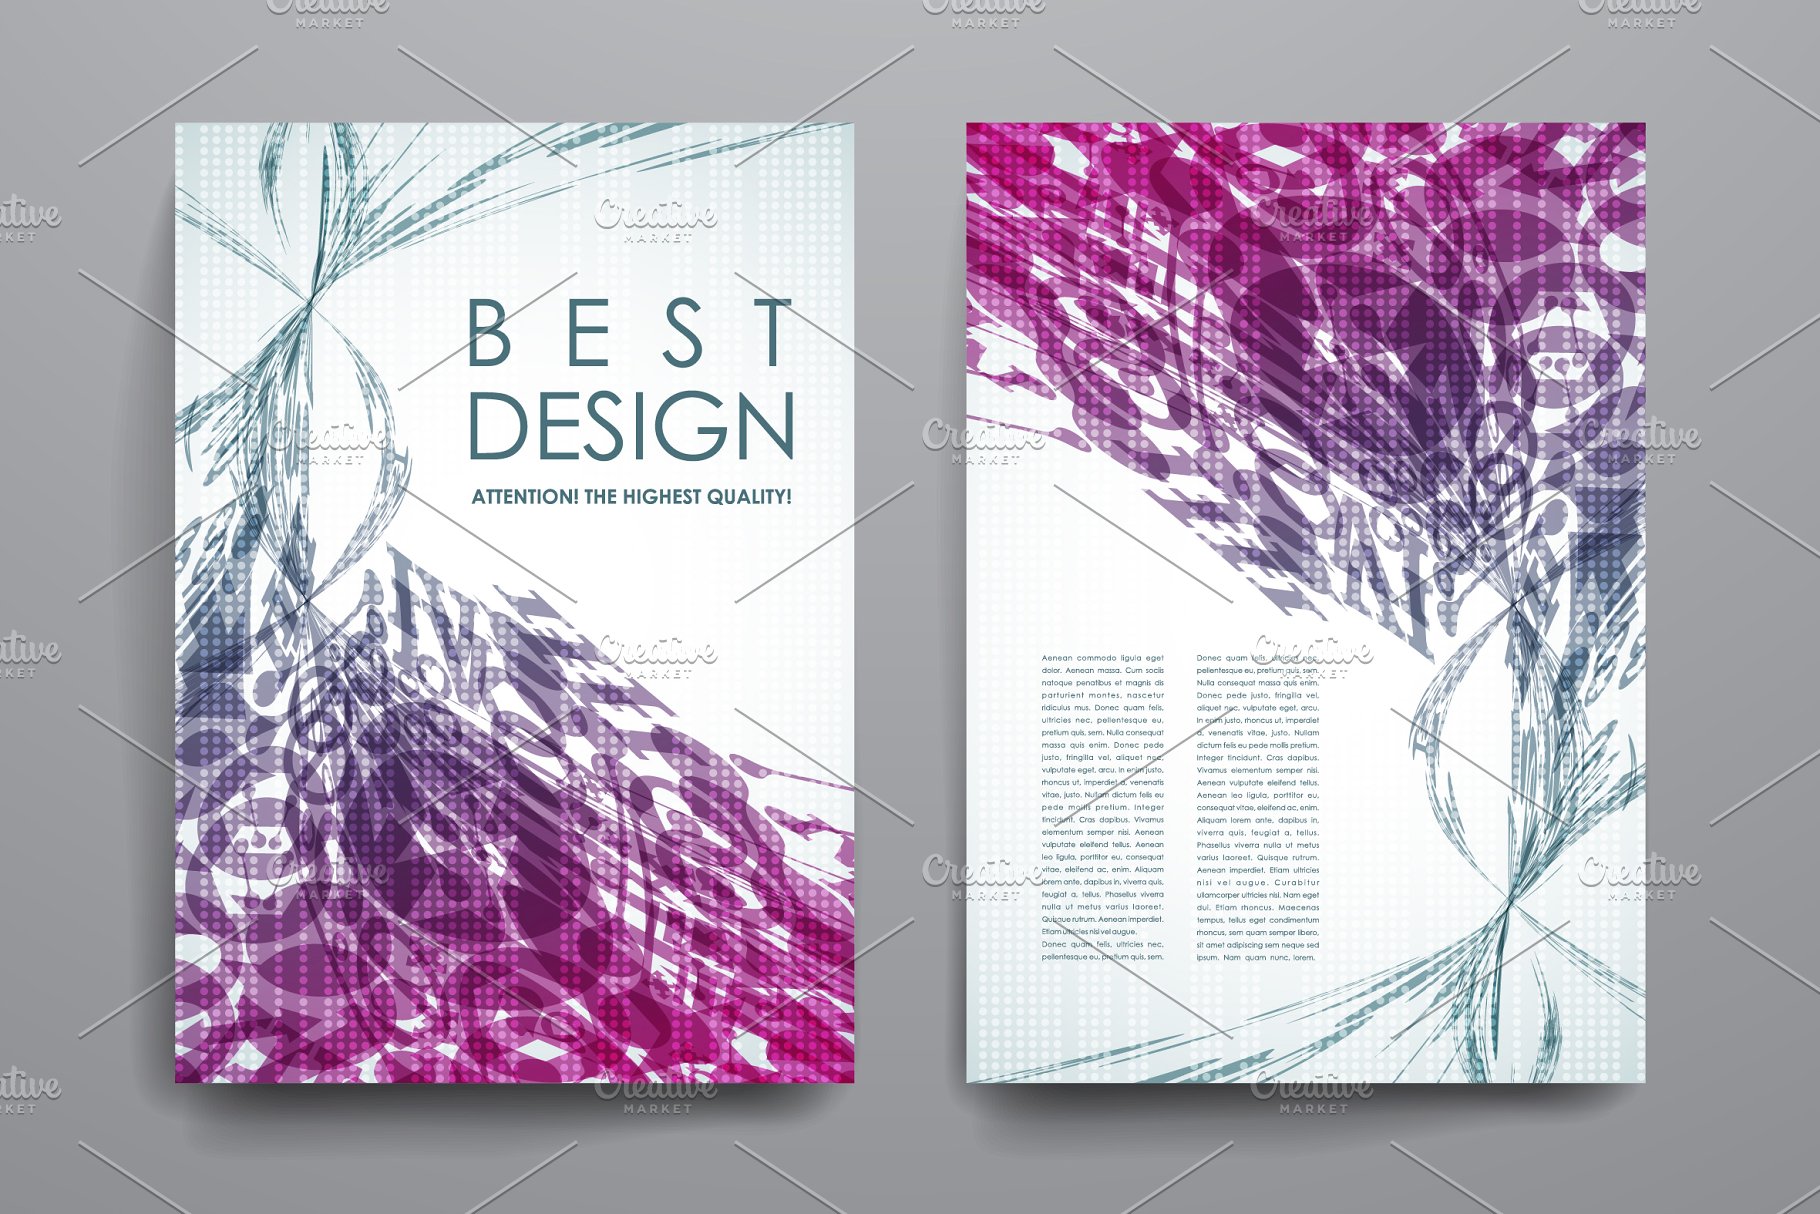 漂亮飘逸线条抽象画册模板 Brochures Templates插图1